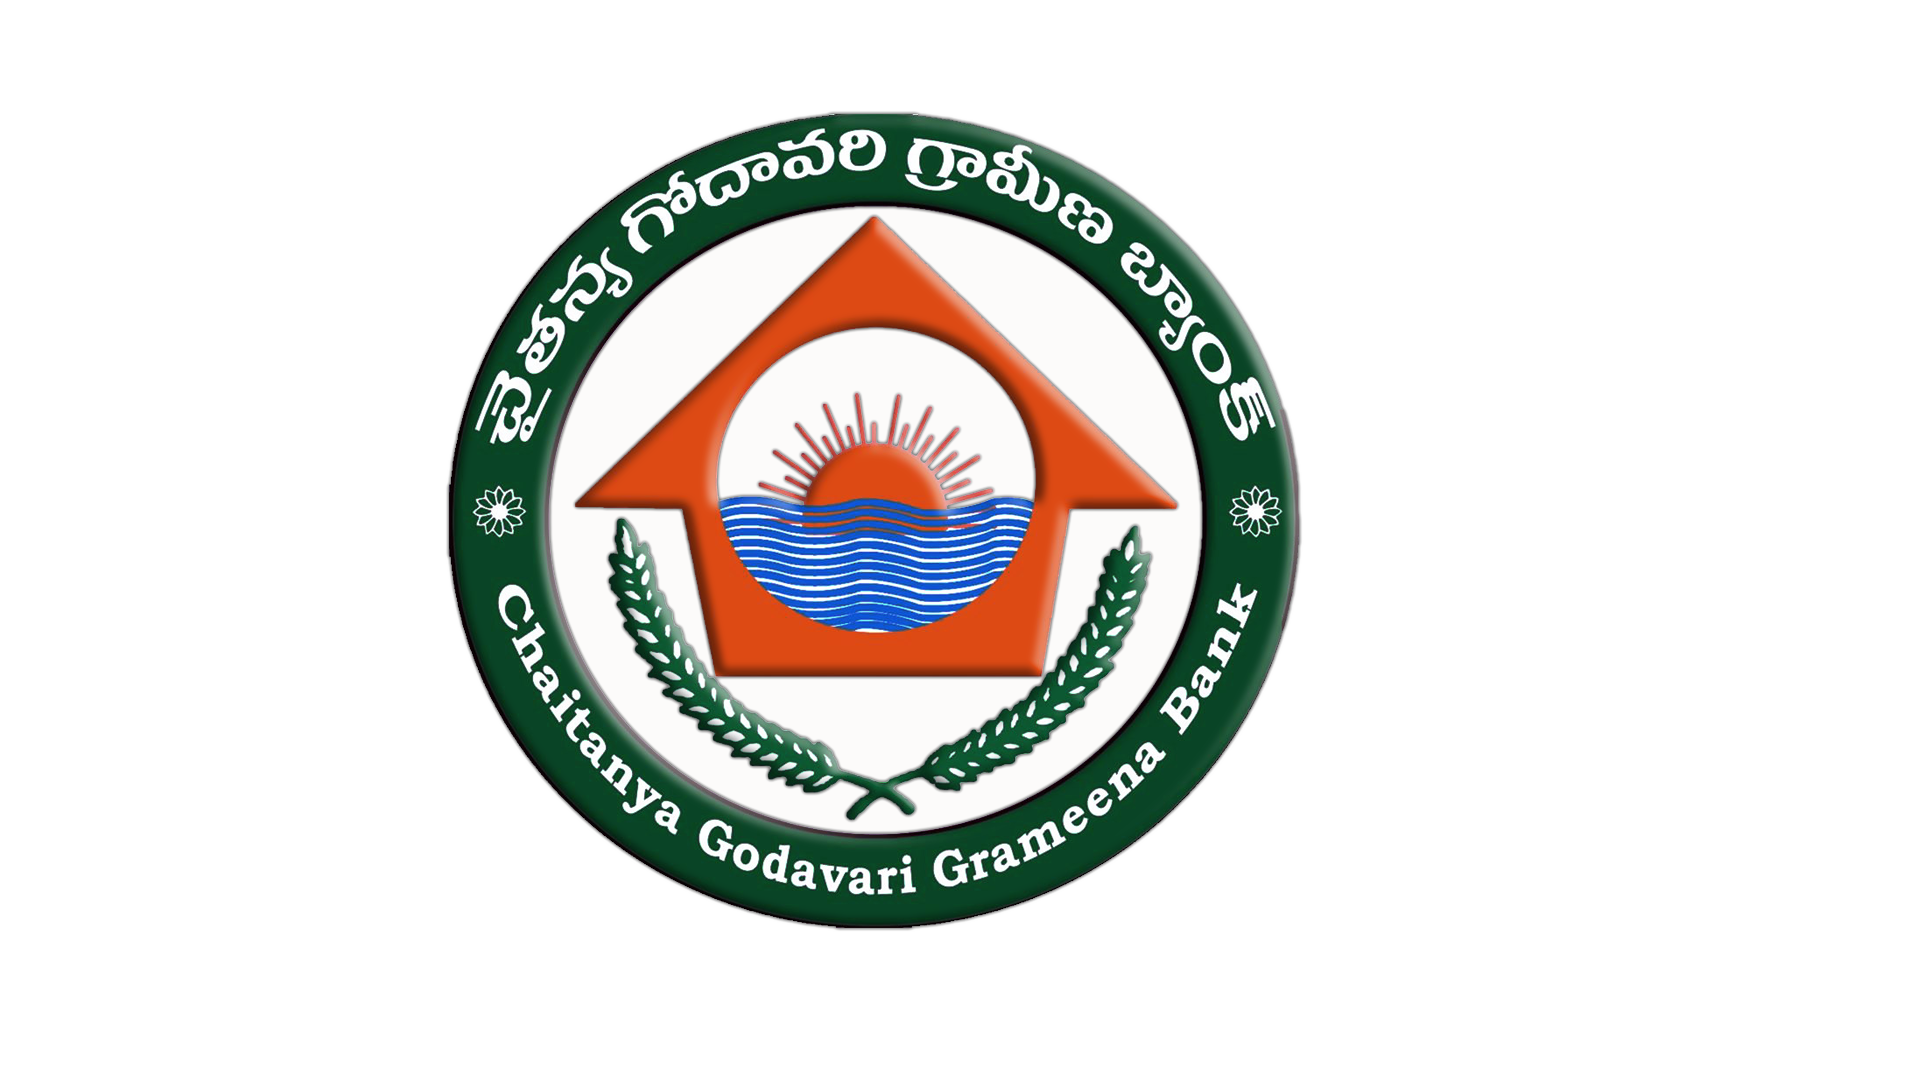 Chaitanya Godavari Grameena Bank